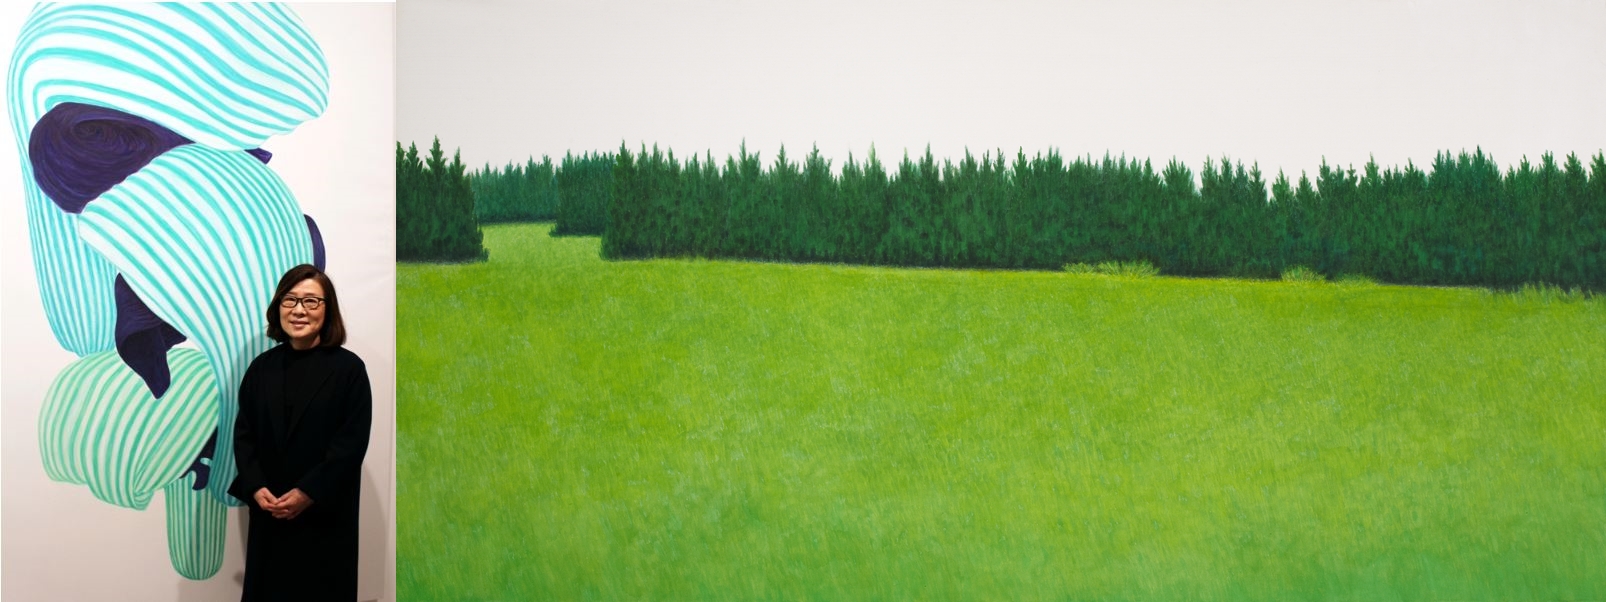 김보희 작가와 작품 투워드(Towards,150 x 300cm, Color on canvas, 2011)